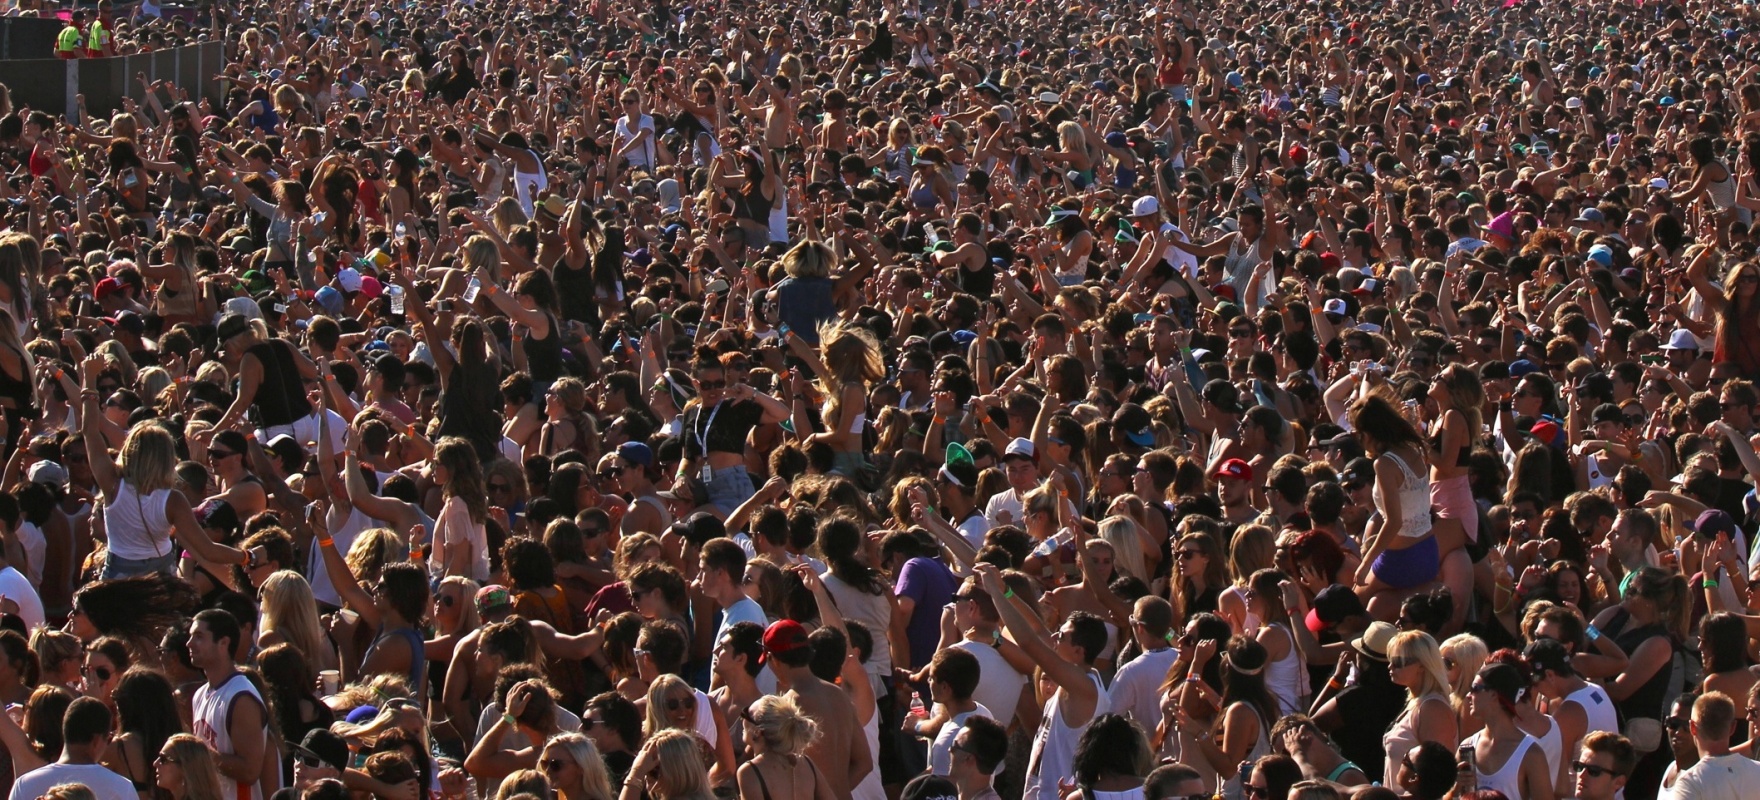 Толпа зевак 7. Человек толпы. Много людей. Толпа народа. Массовое скопление людей.